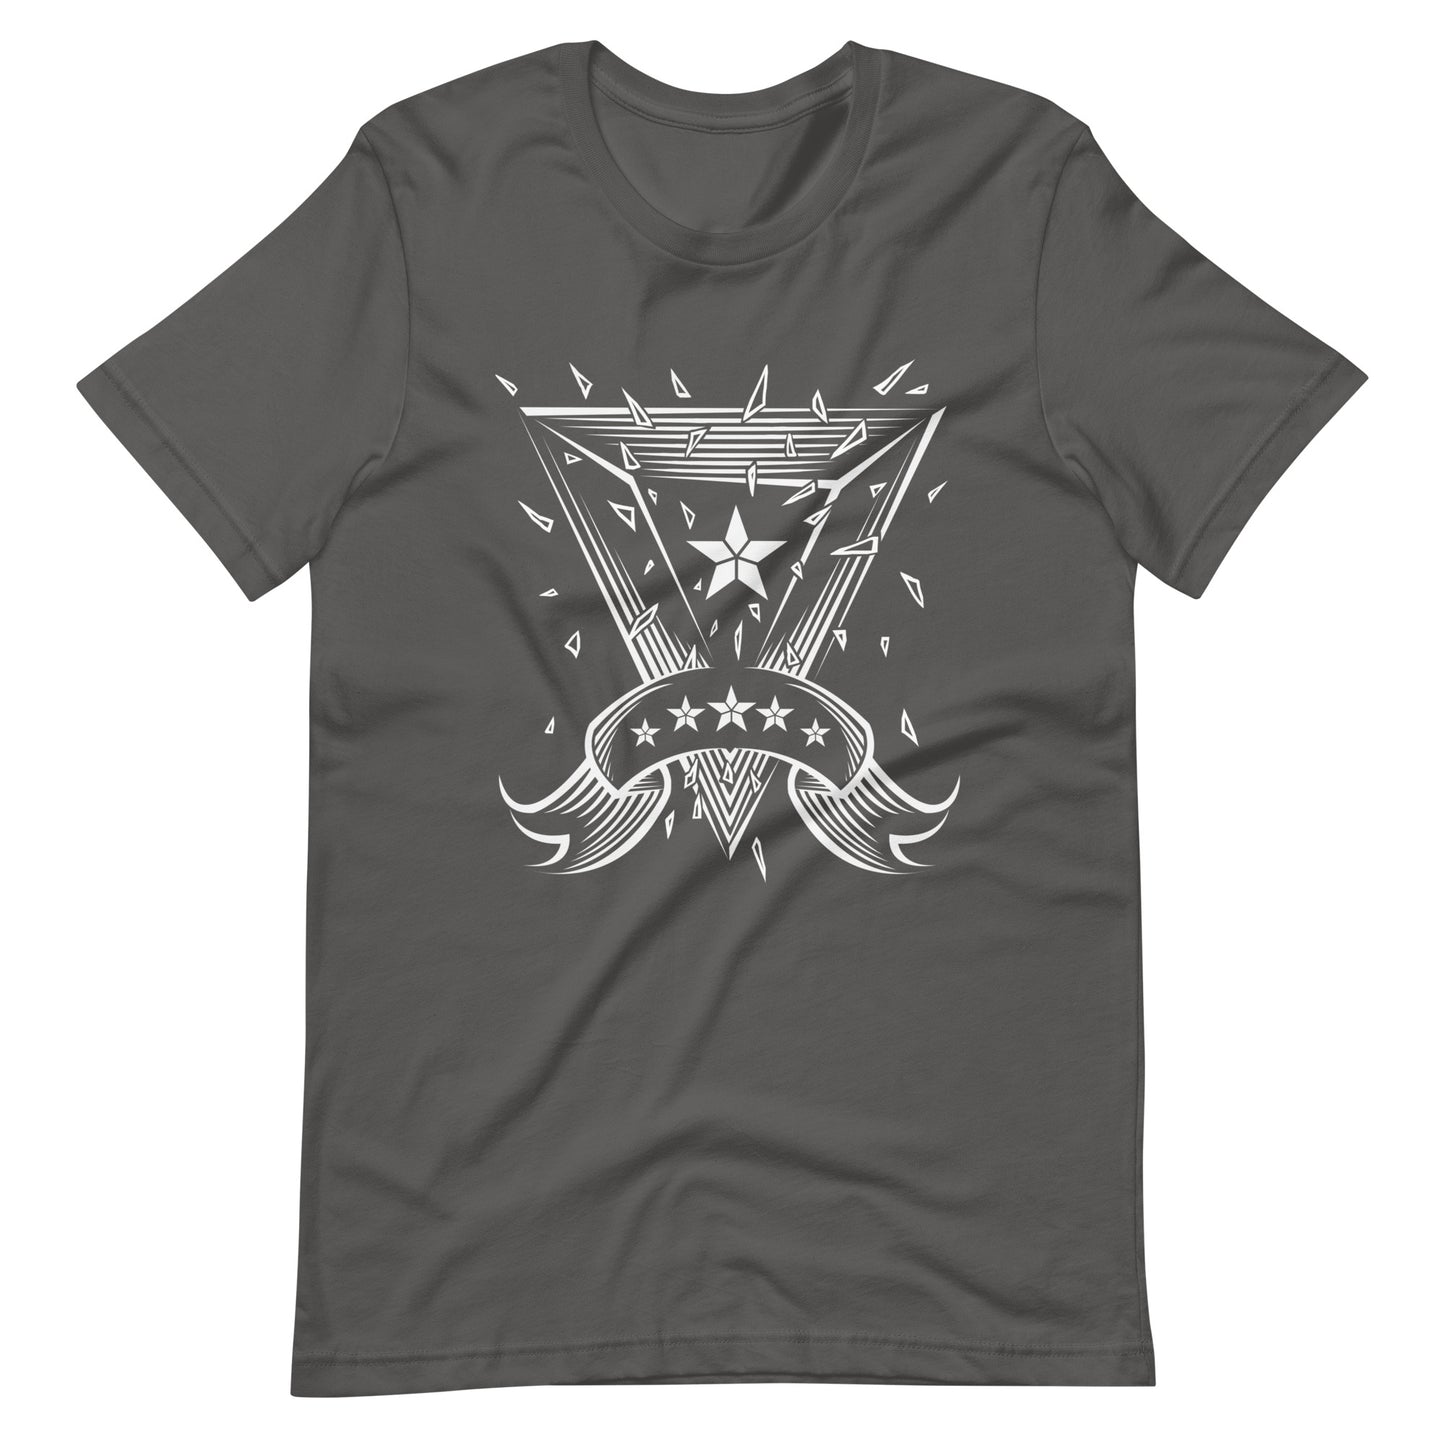 Starlight - Men's t-shirt - Asphalt Front